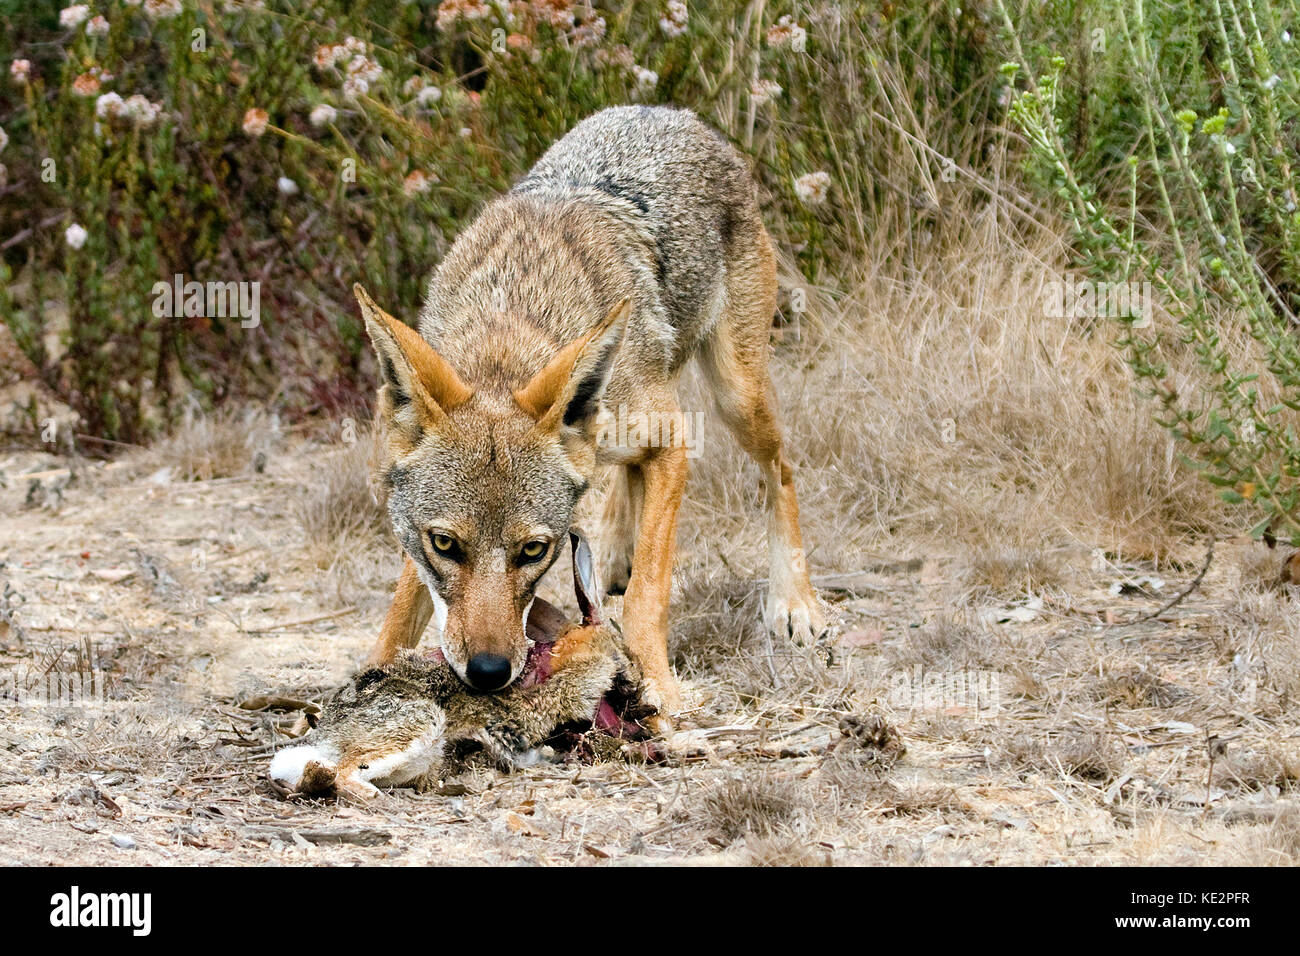 coyote-eating-unlucky-rabbit-KE2PFR.jpg